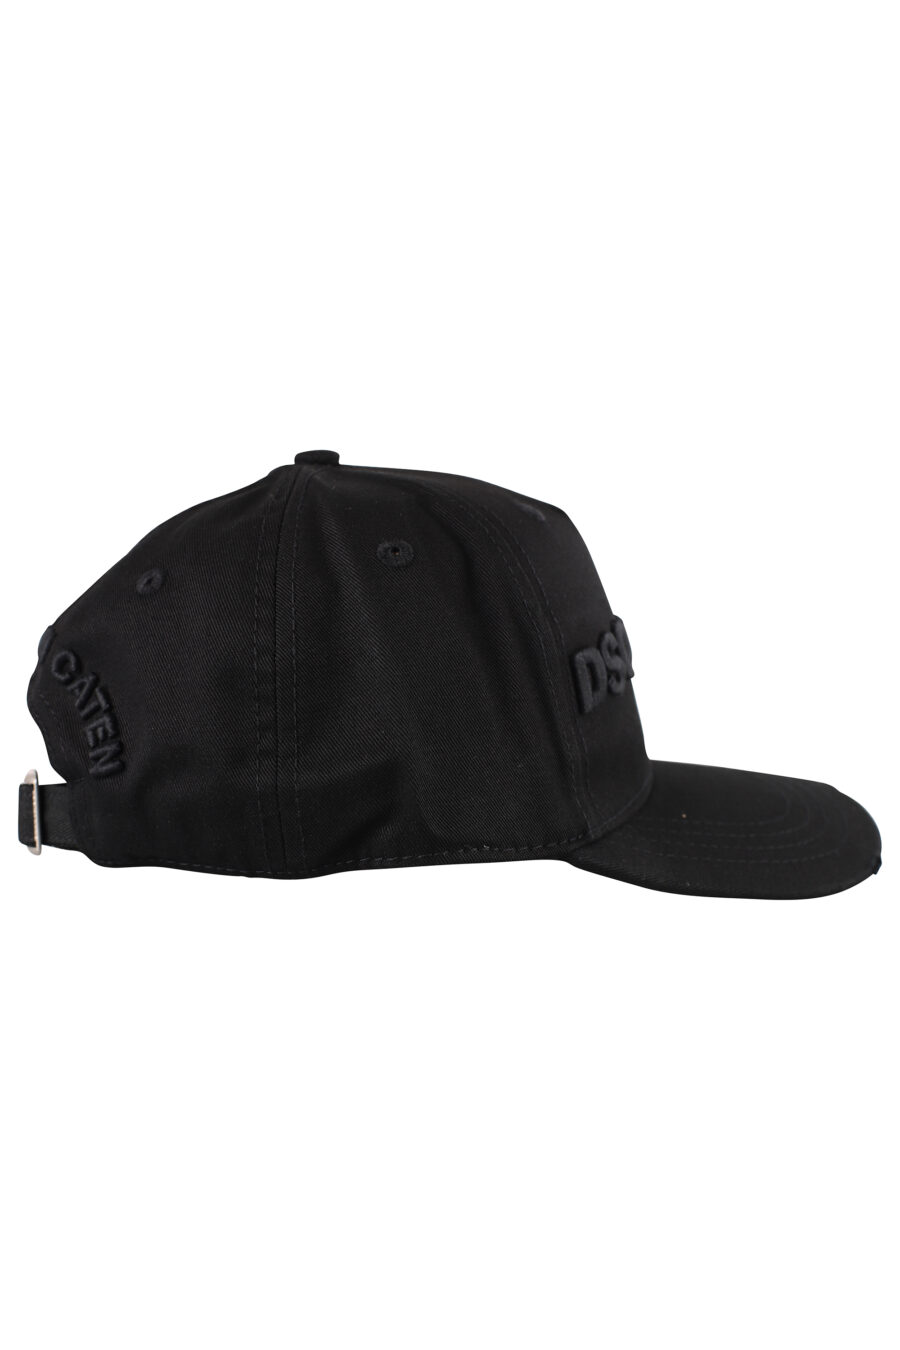 Gorra negra con logo bordado negro - IMG 1245